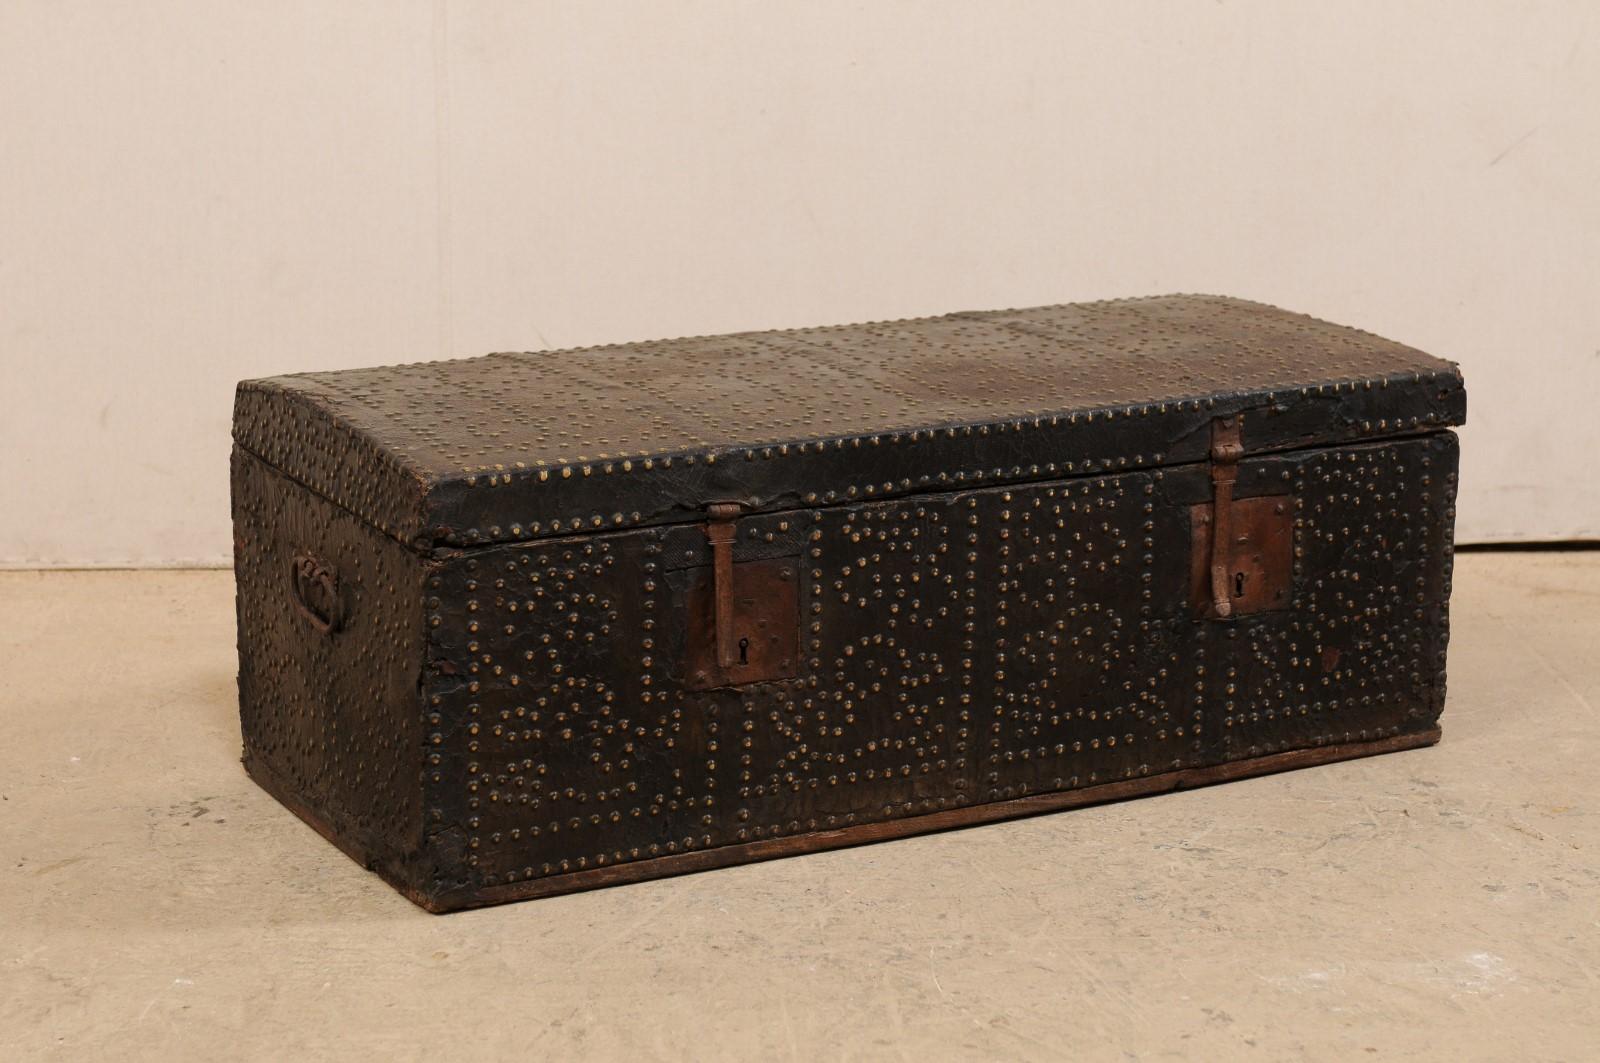 Un coffret baroque espagnol enveloppé de cuir avec des accents en laiton du 18ème siècle. Ce cercueil espagnol ancien, de forme rectangulaire, a été orné de clous en laiton (qui ont une patine foncée due à l'âge) sur le dessus, la face avant et les